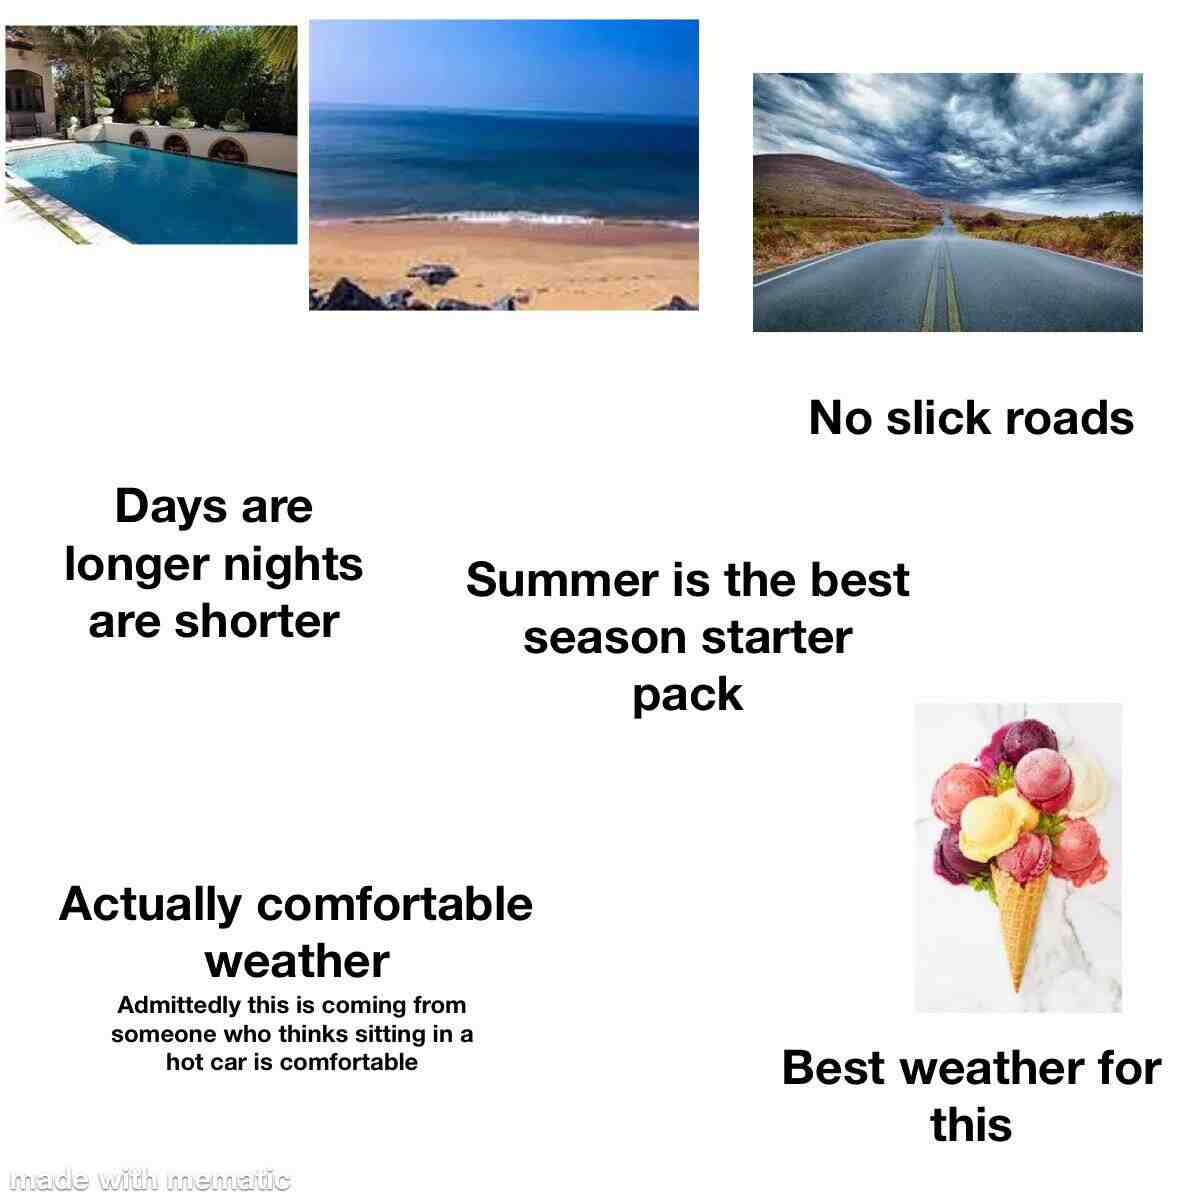 Qual è il periodo estivo?